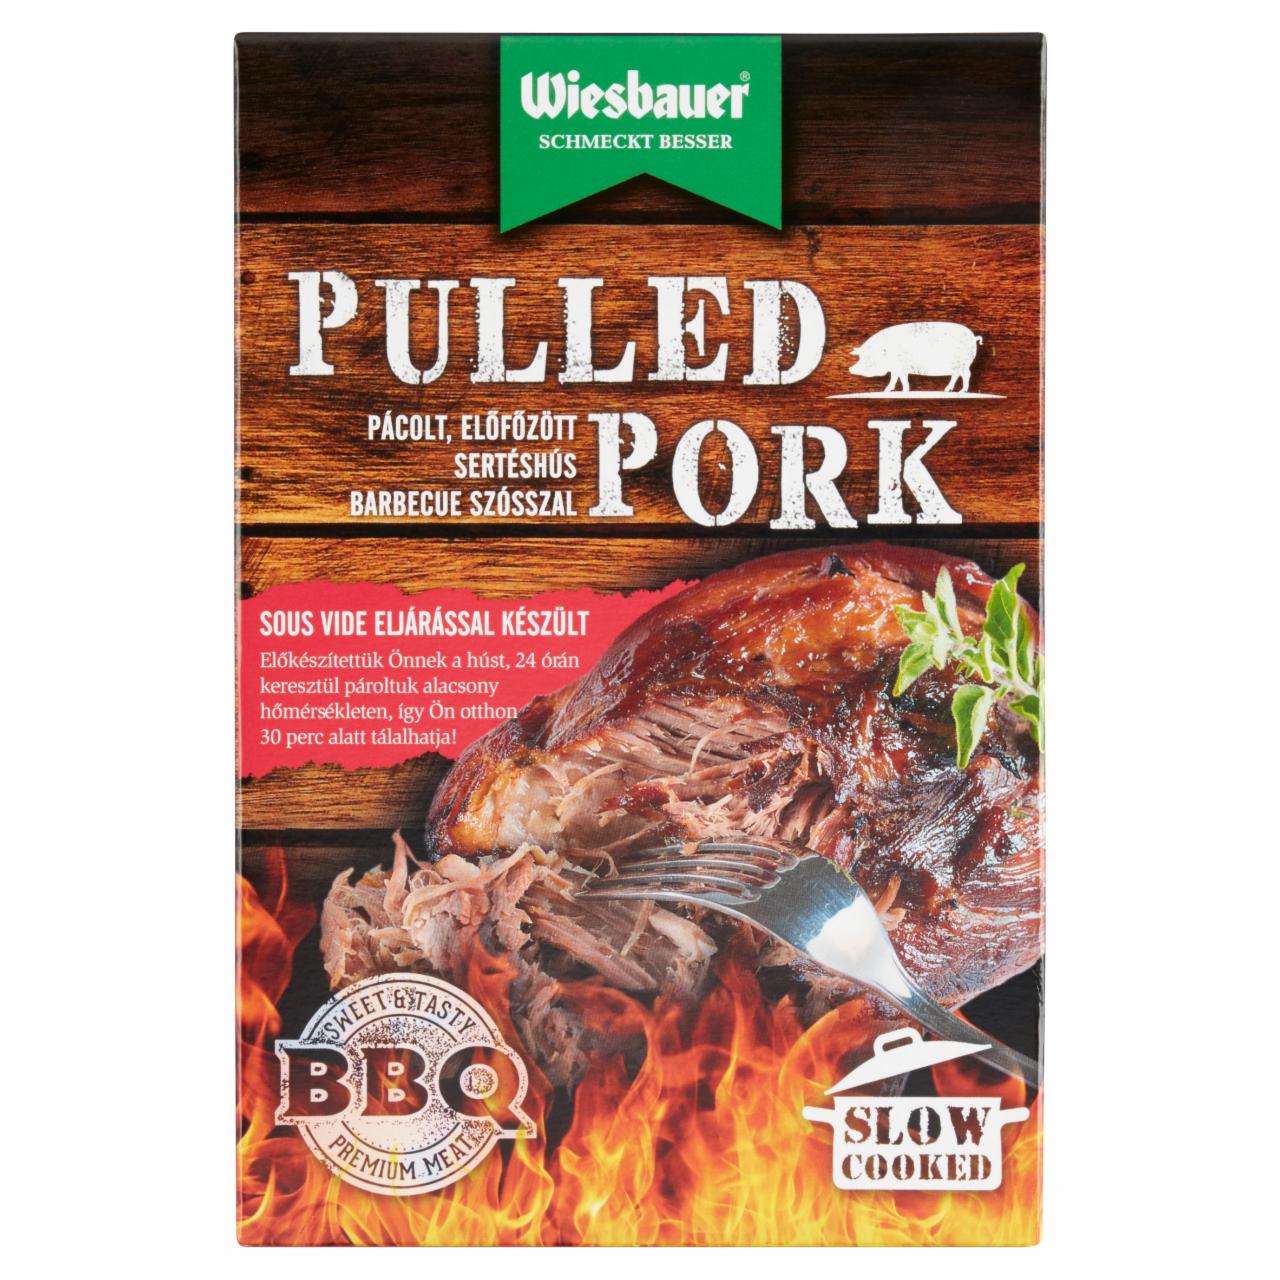 Képek - Wiesbauer Pulled Pork pácolt, előfőzött sertéshús barbecue szósszal 400 g